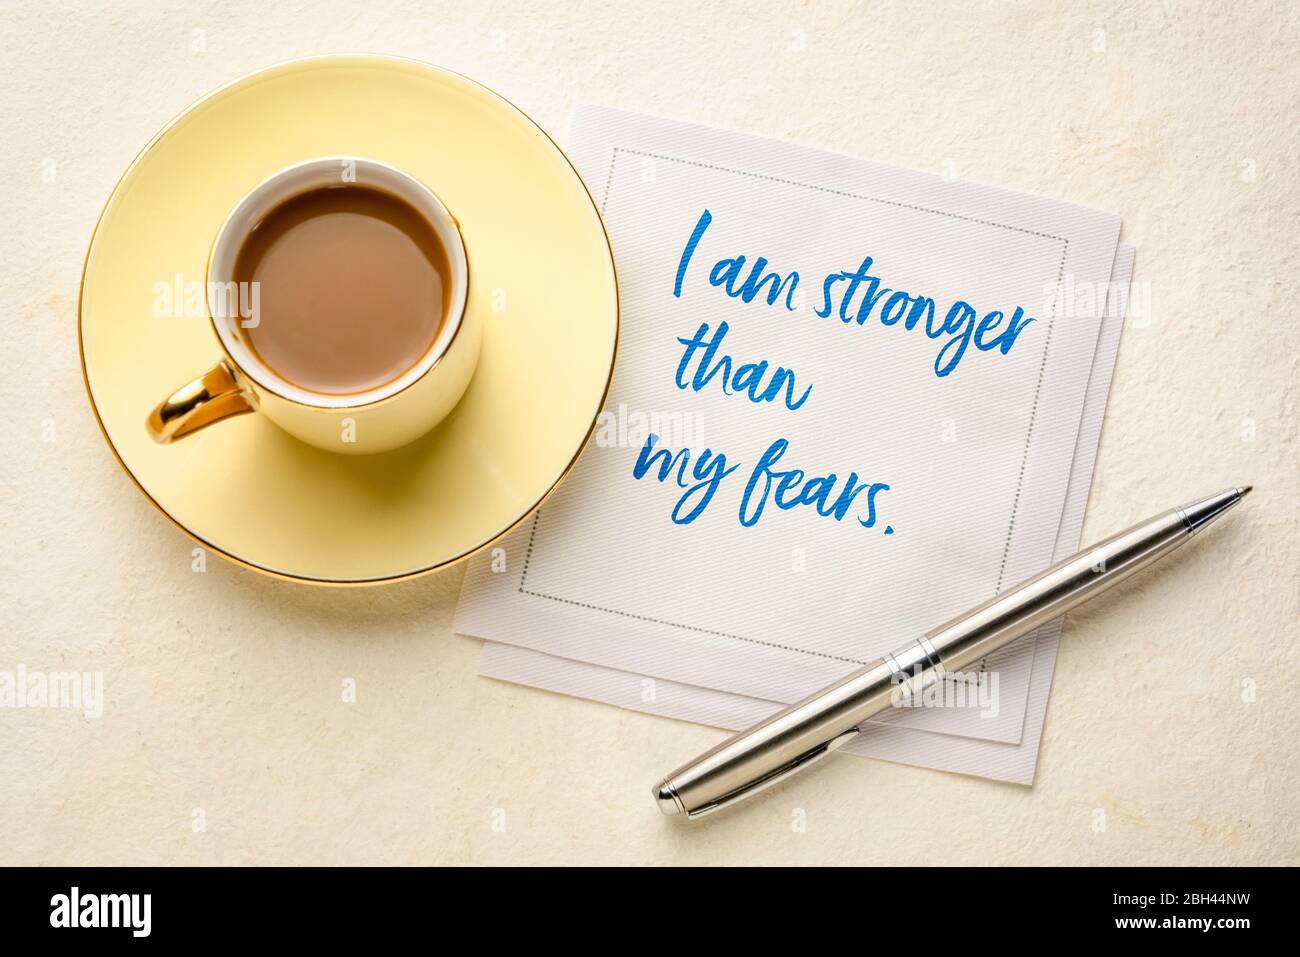 Ich bin stärker als meine Ängste - handschriftlich auf Serviette mit Kaffee. Positive Affirmation und persönliche Entwicklung Konzept. Stockfoto